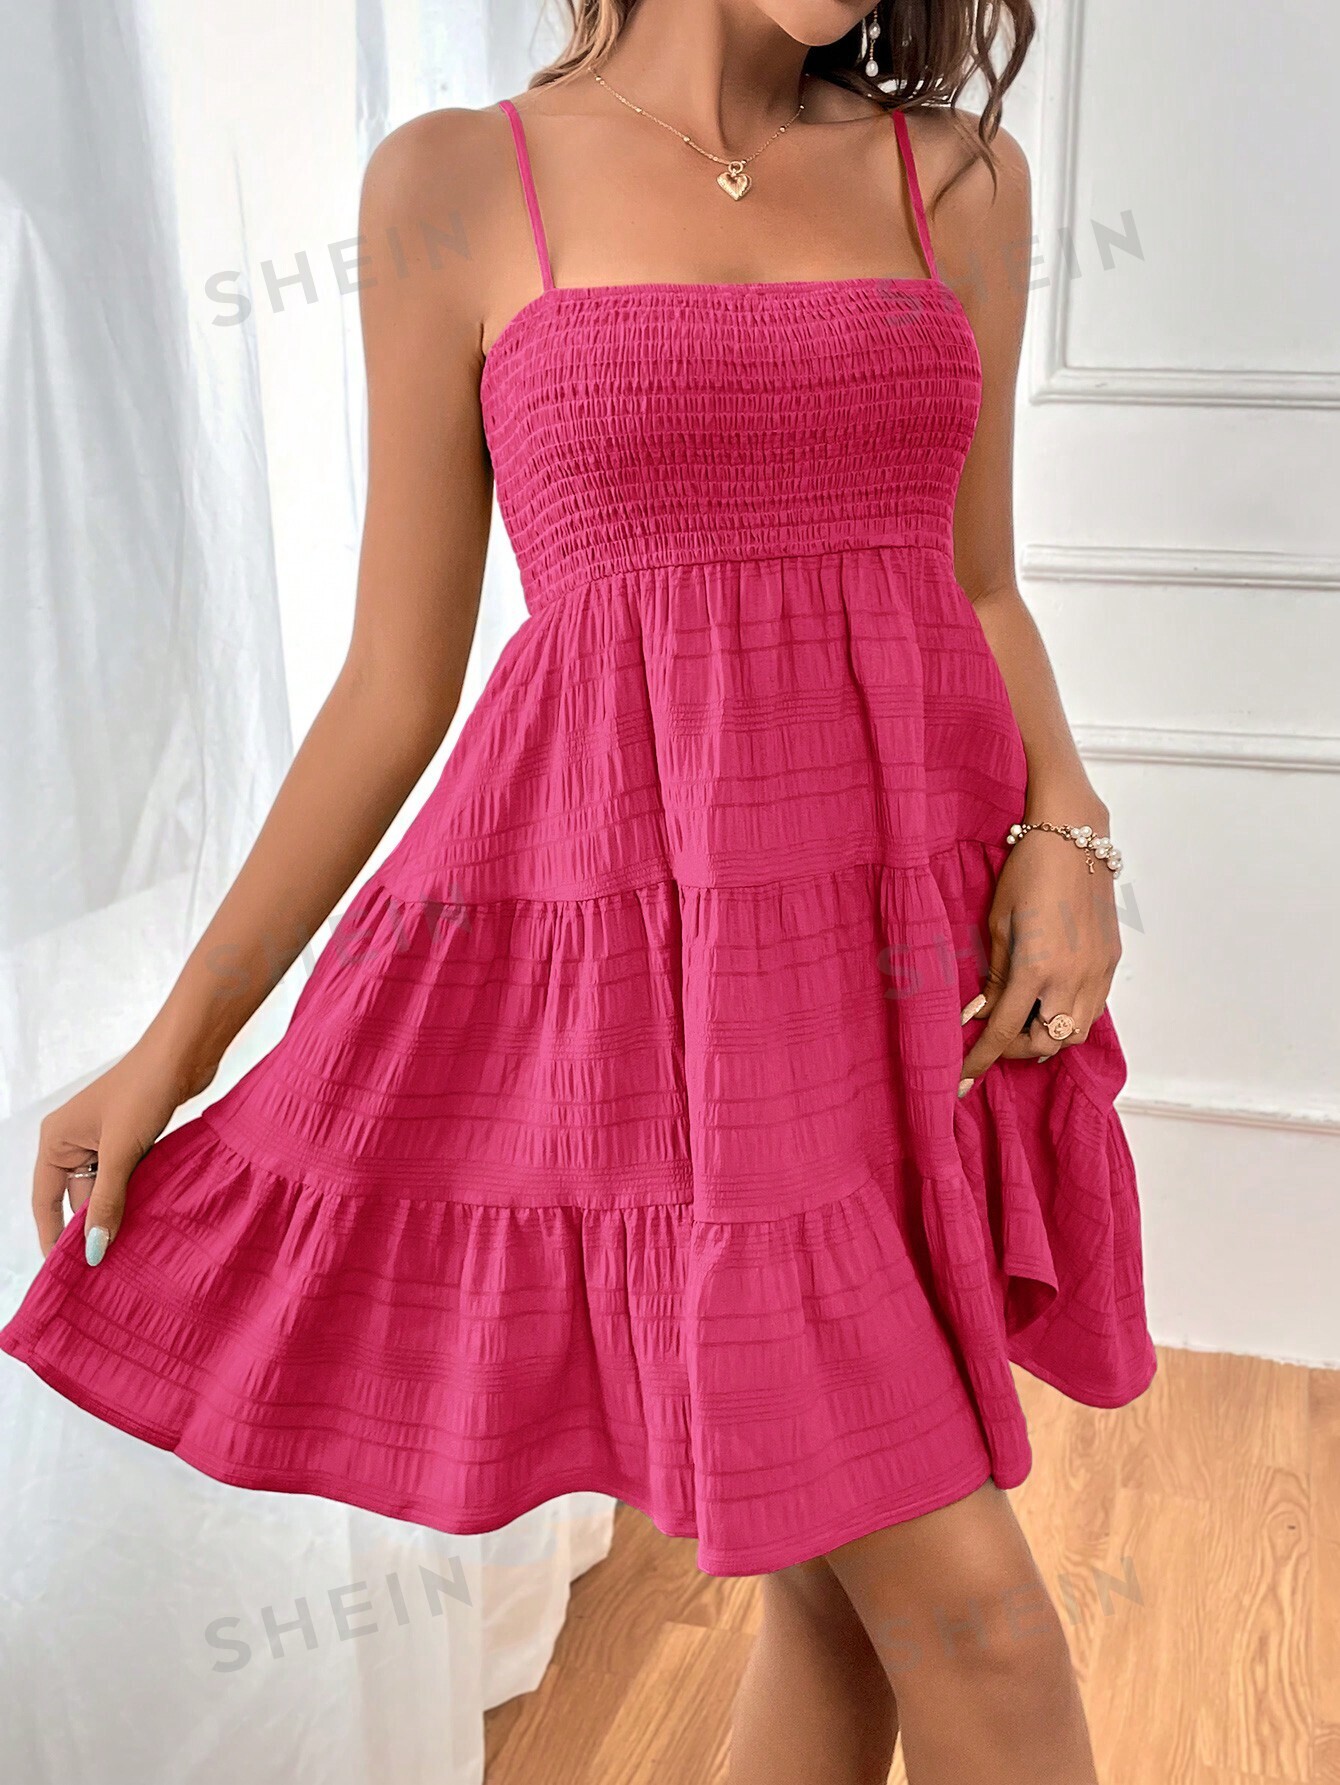 SHEIN WYWH Женское однотонное платье на тонких бретельках с оборками и подолом, ярко-розовый